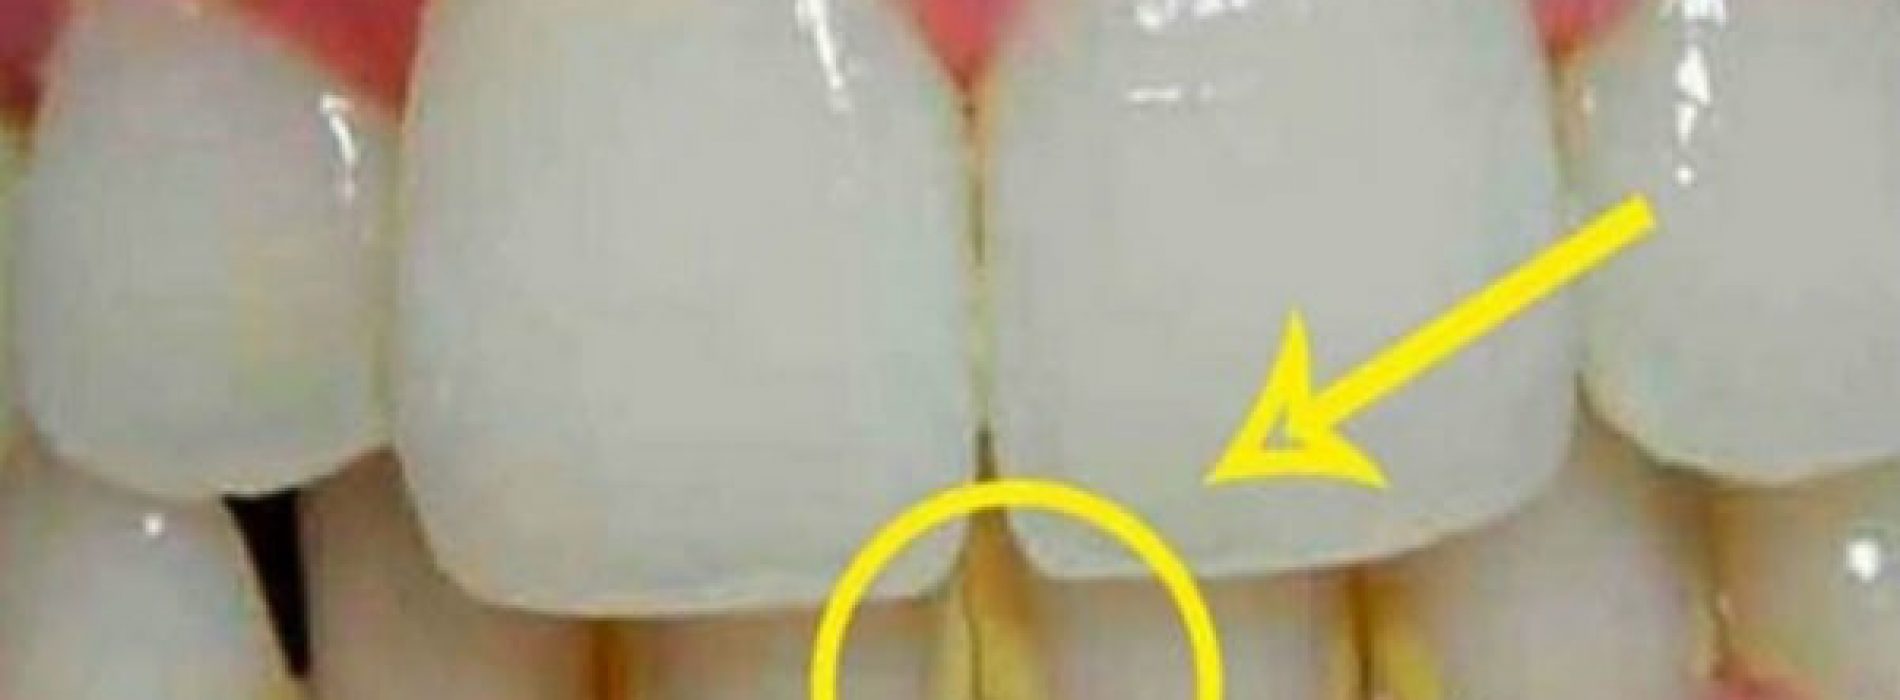 Hoe tandplak te verwijderen in 5 minuten op natuurlijke wijze, zonder naar de tandarts te gaan!